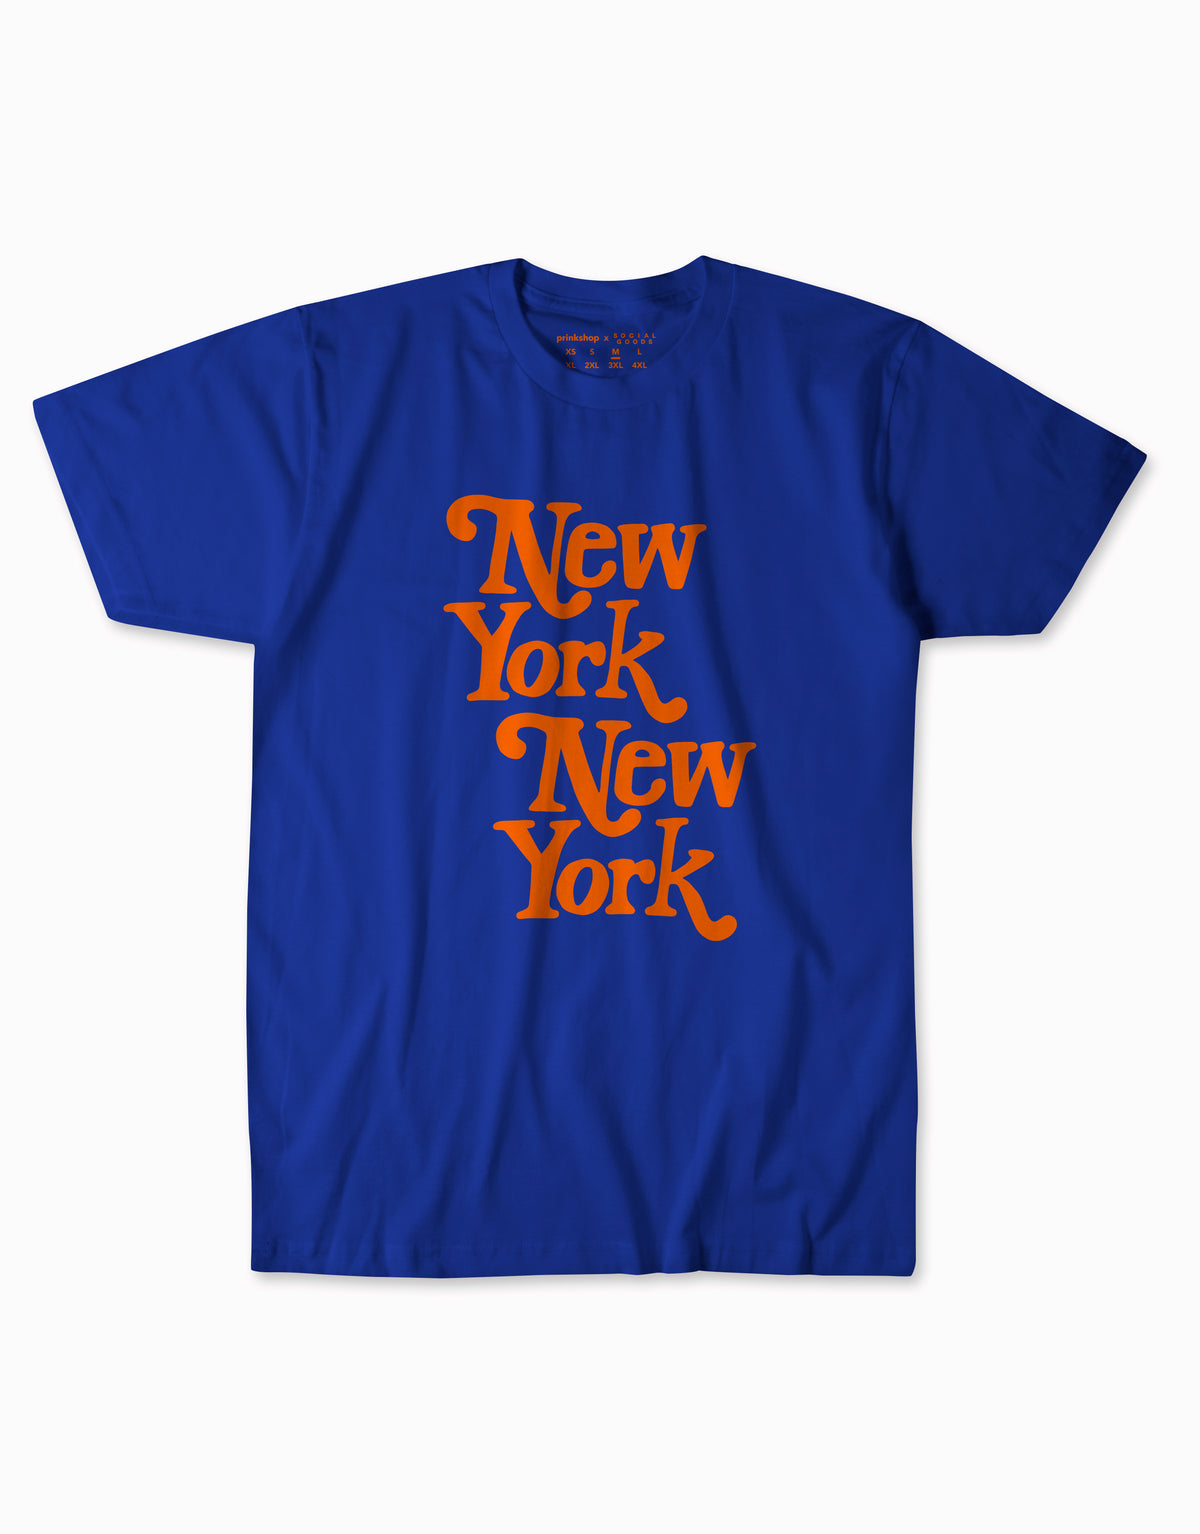 New York, New York Tee - Royal Blue/Orange